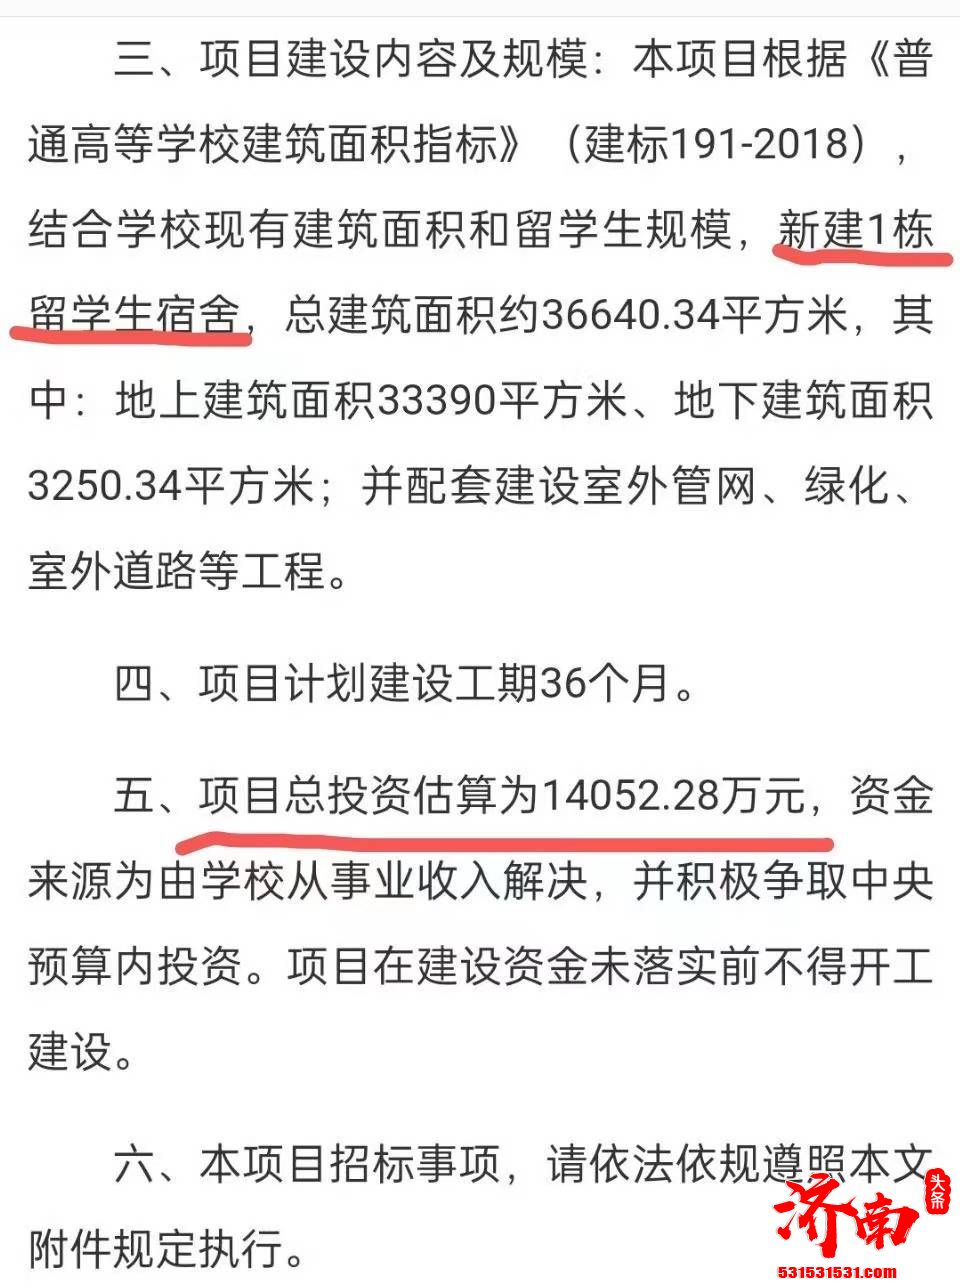 “南昌航空大学斥资1.4亿为留学生修建新宿舍”引发热议